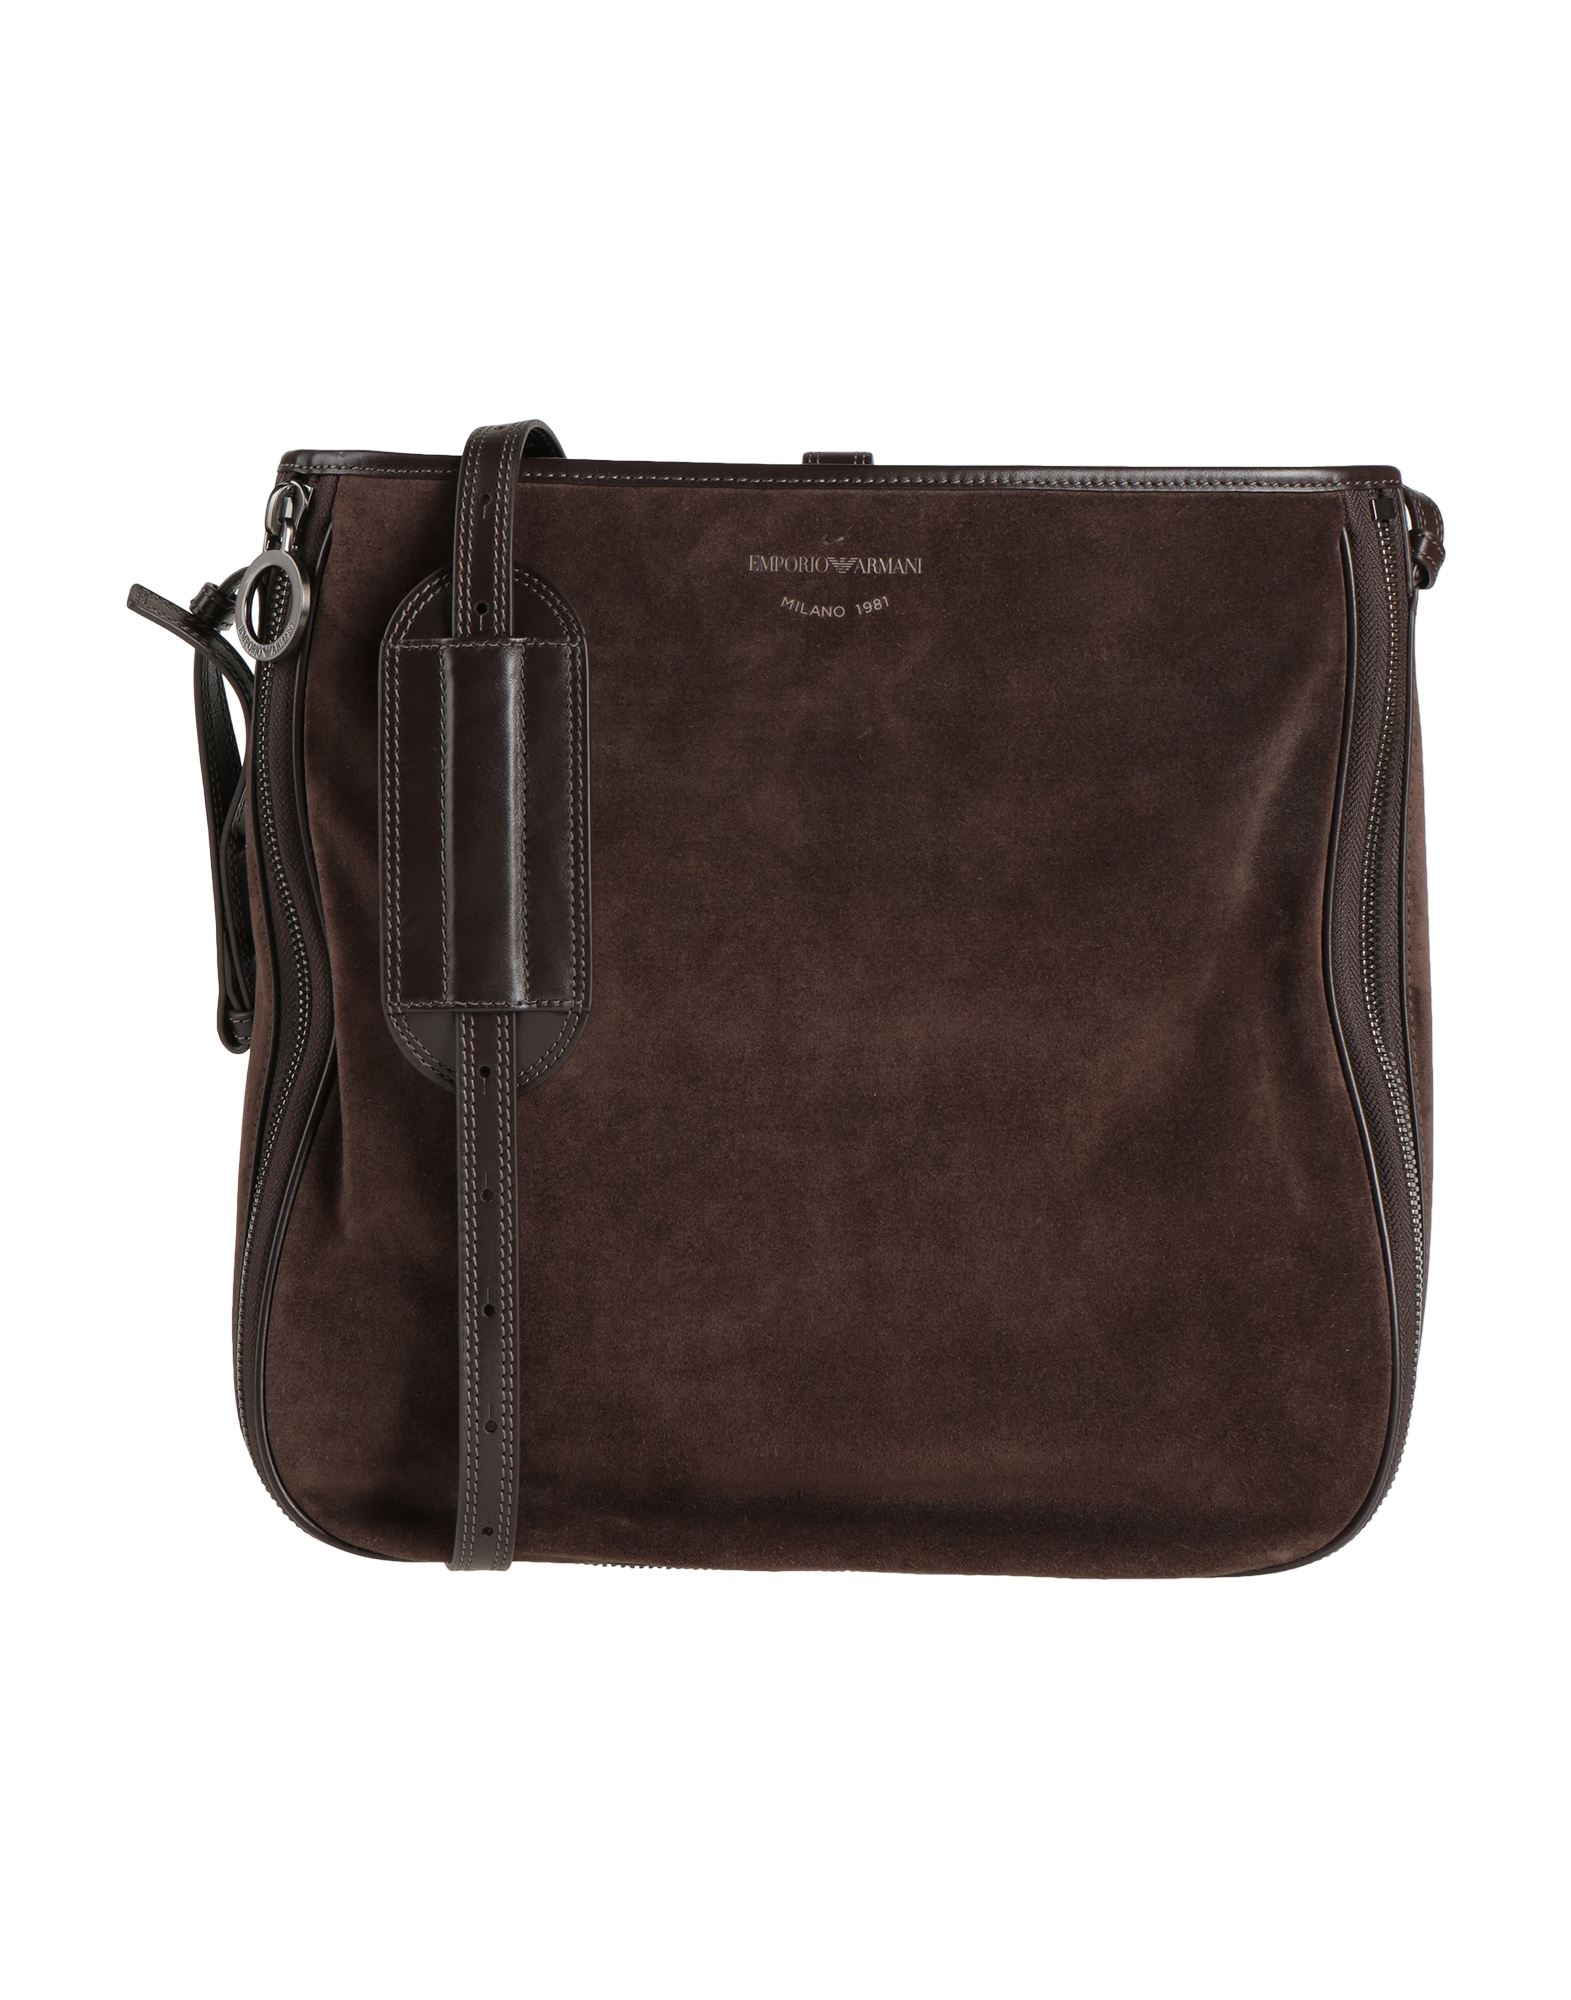 Emporio Armani Handbags In Brown